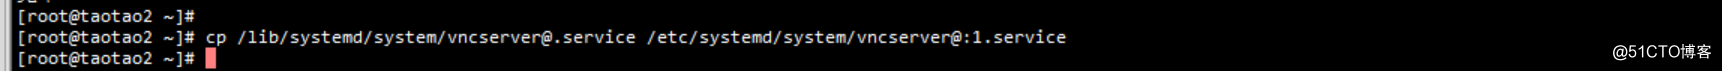 centos7系列安装vnc服务并授权用户访问_tigervnc_04